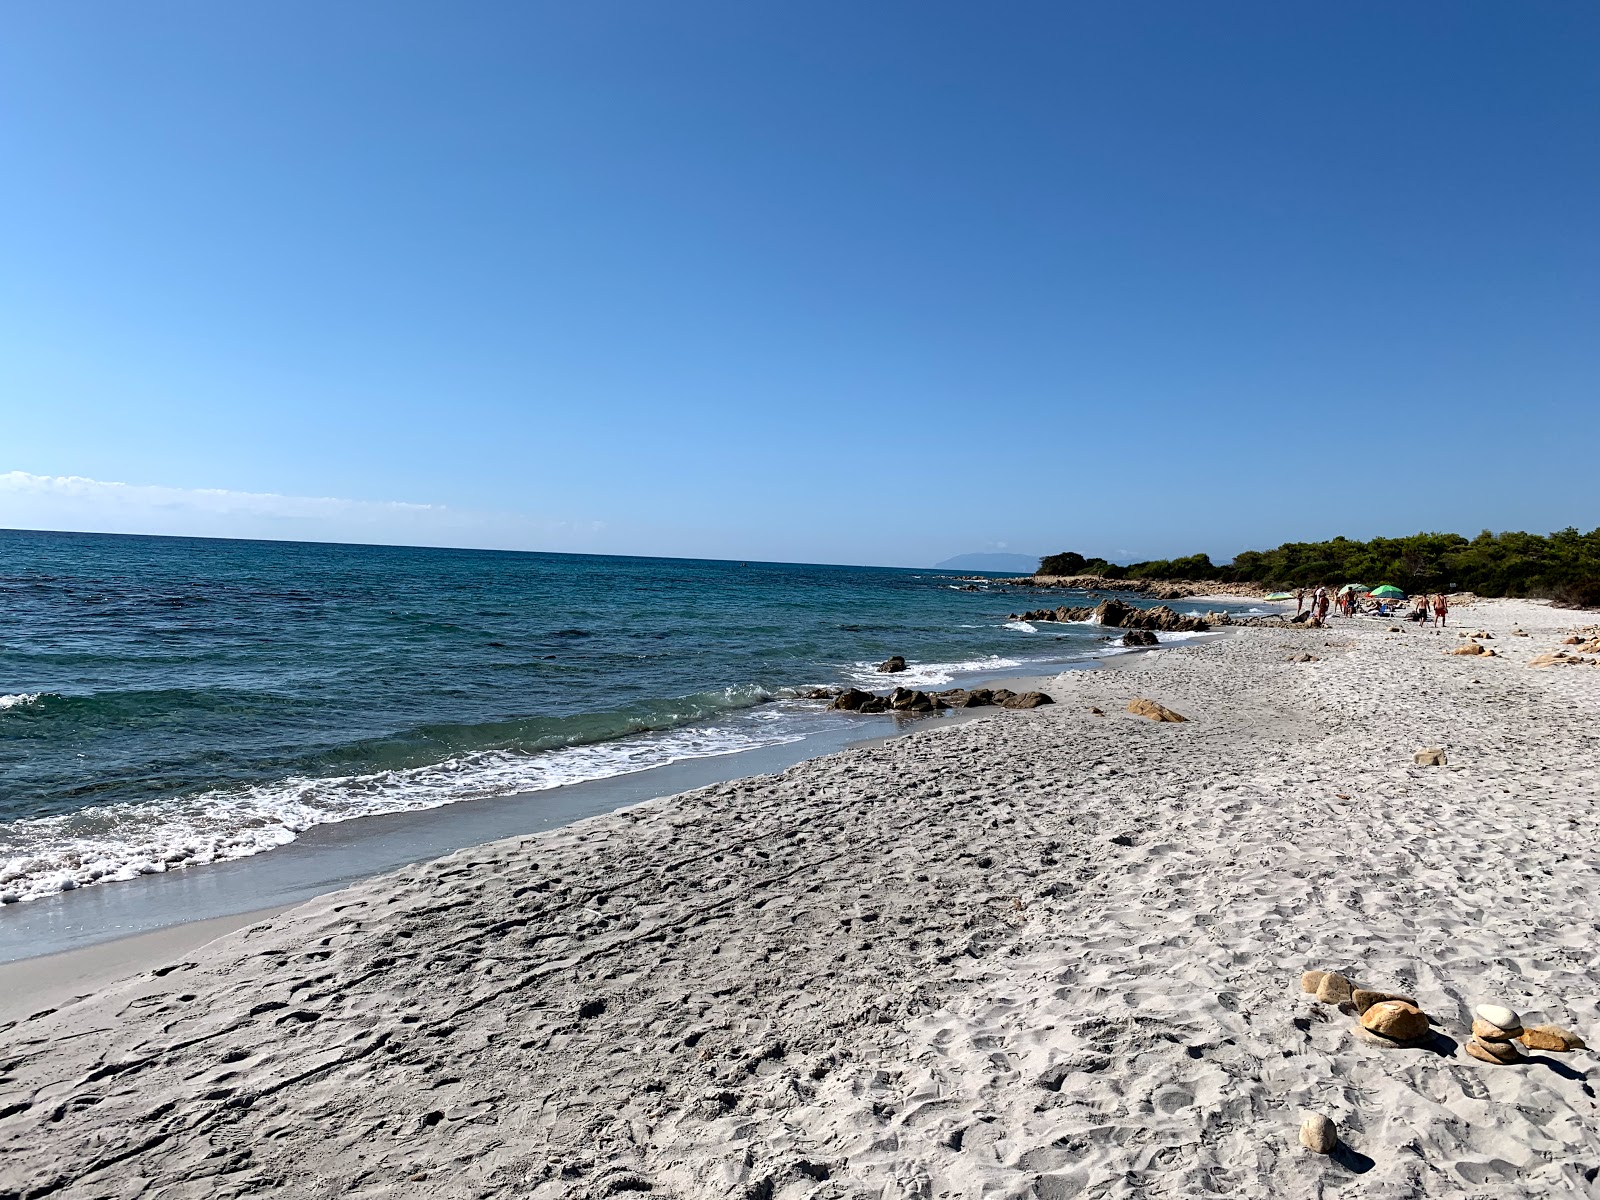 Foto de Spiaggia Pedra Marchesa con recta y larga